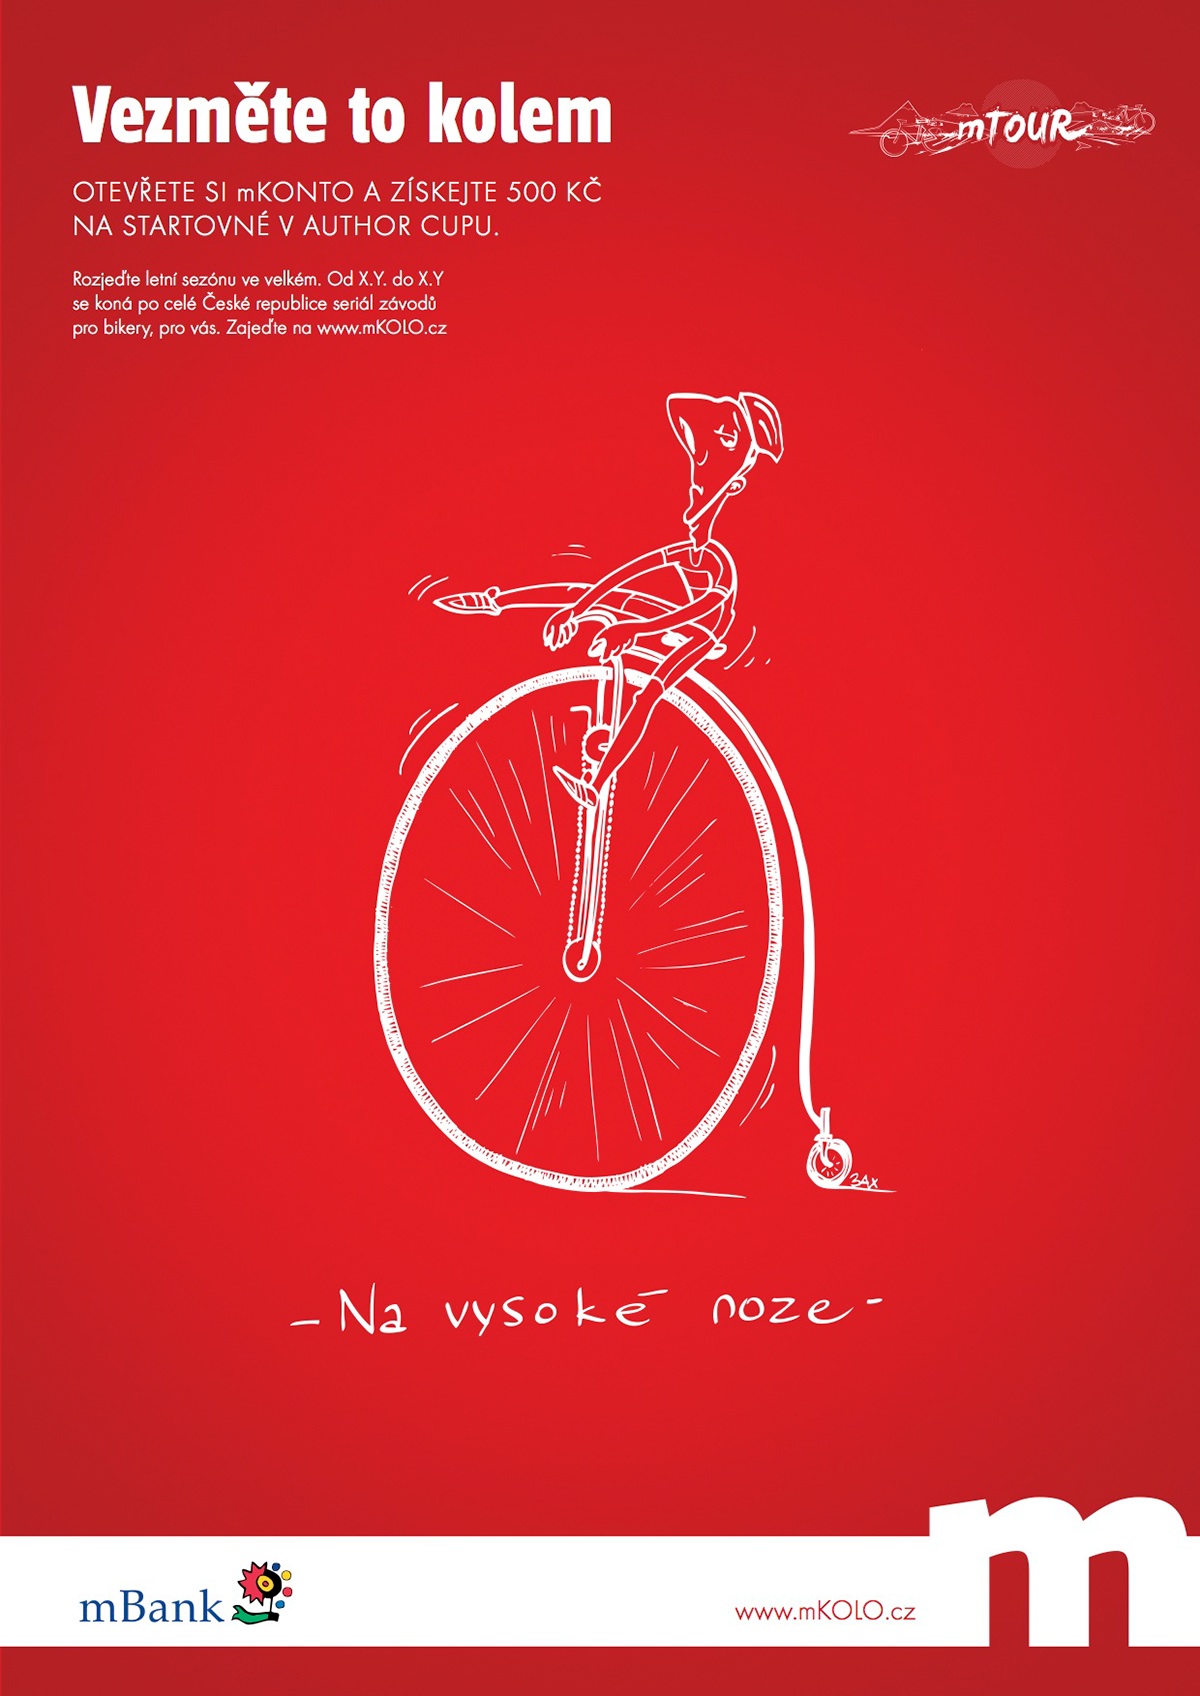 mBank mTour kola bikes ilustration Houdek Zach mustard